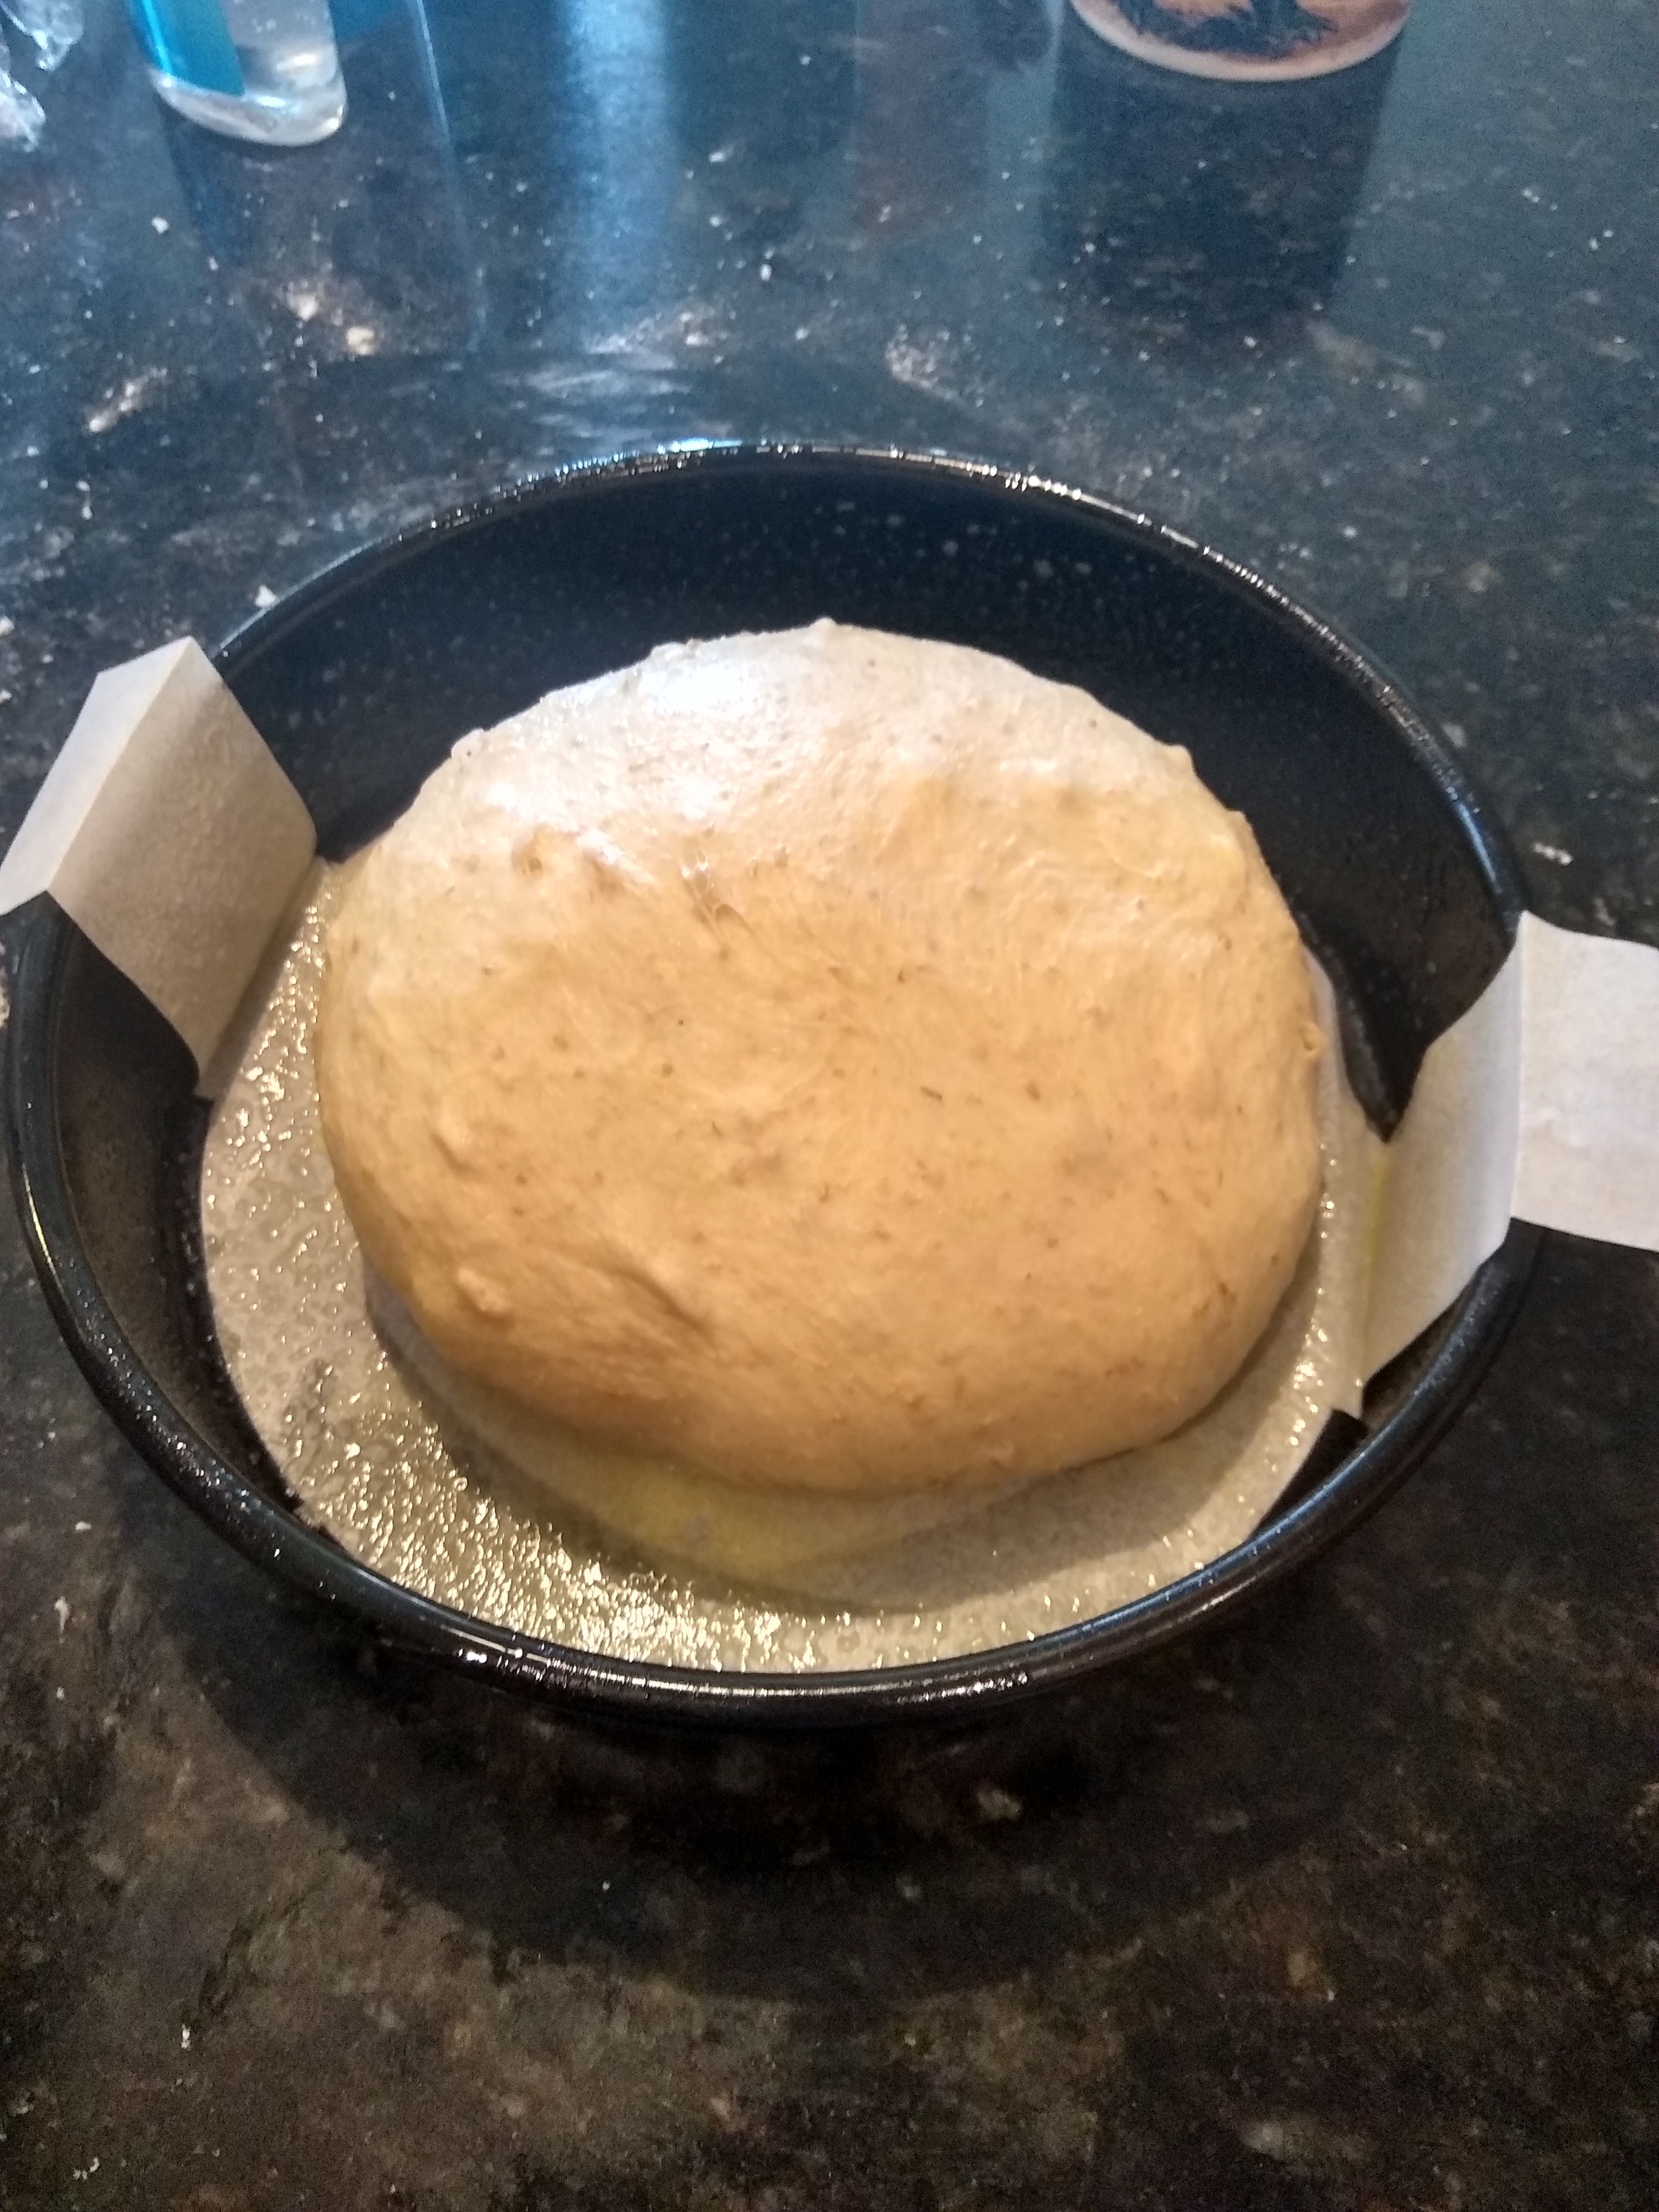 Multigrain bread, proofing in a bread pan